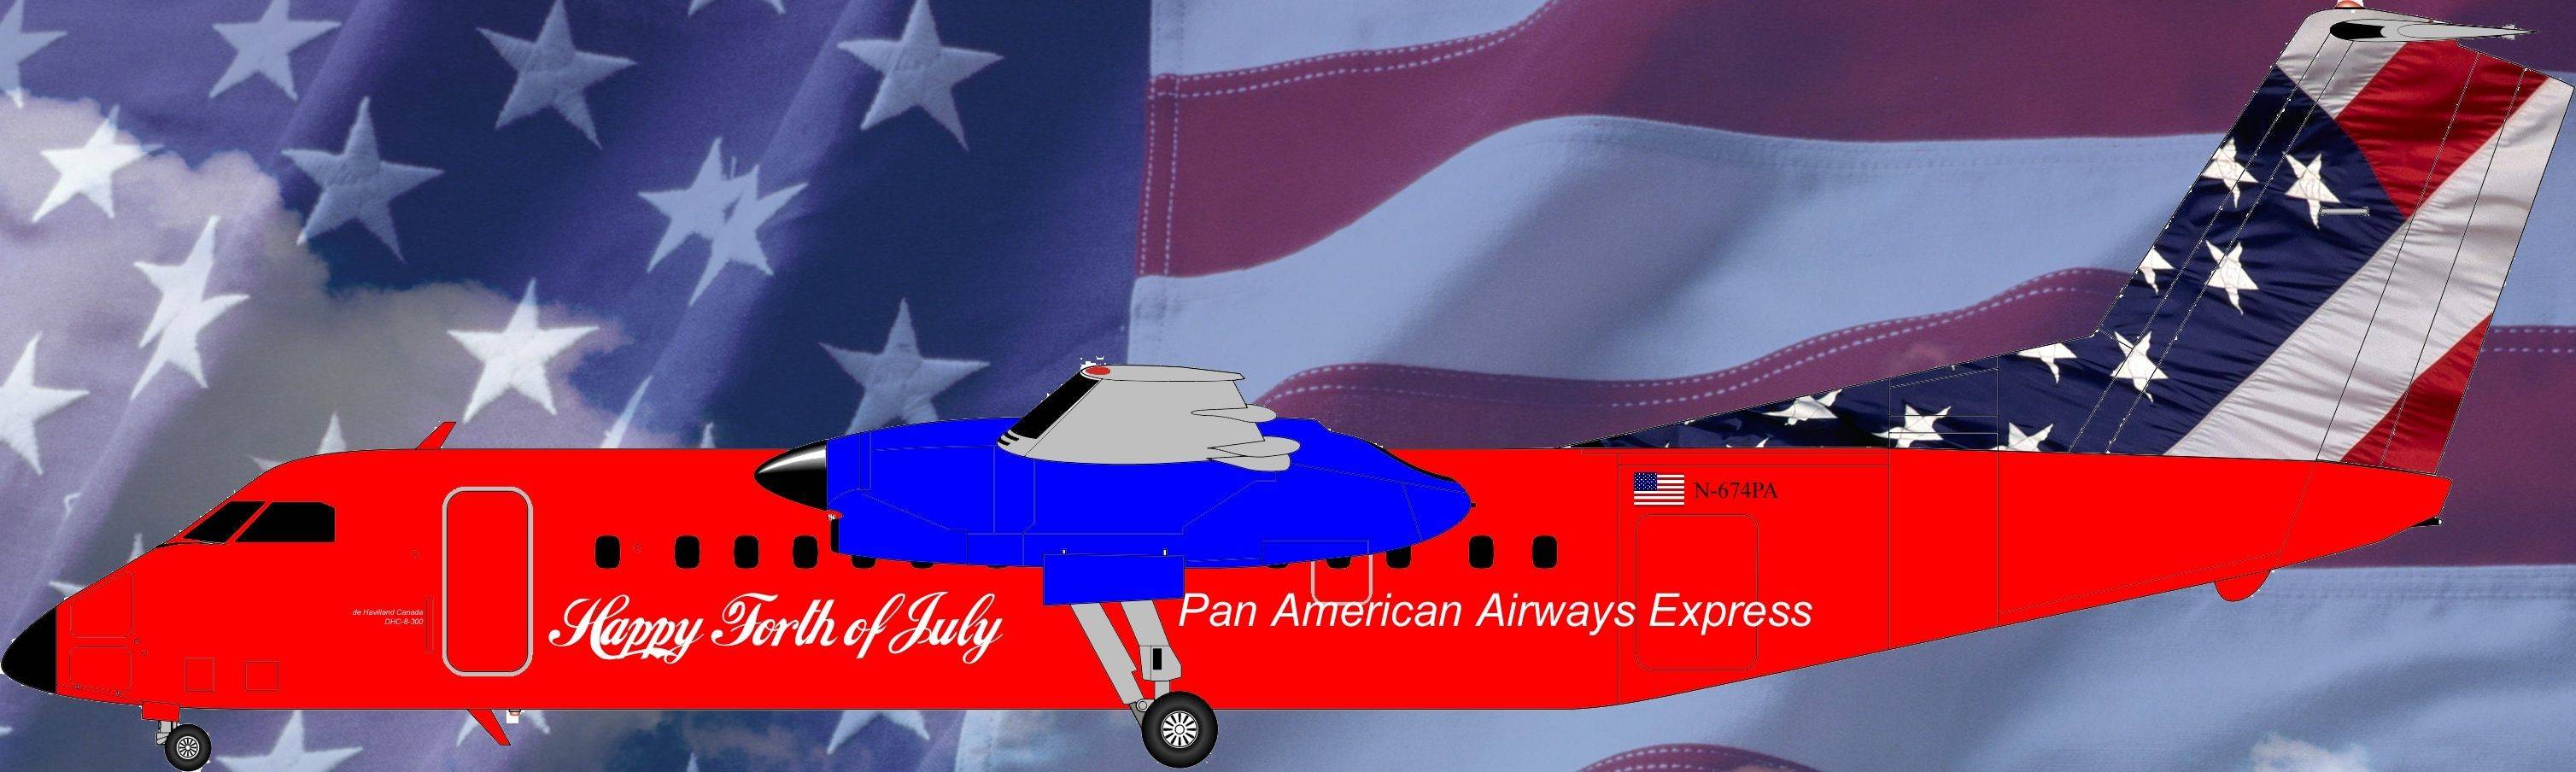 PanAm Airways Dhc-8-10